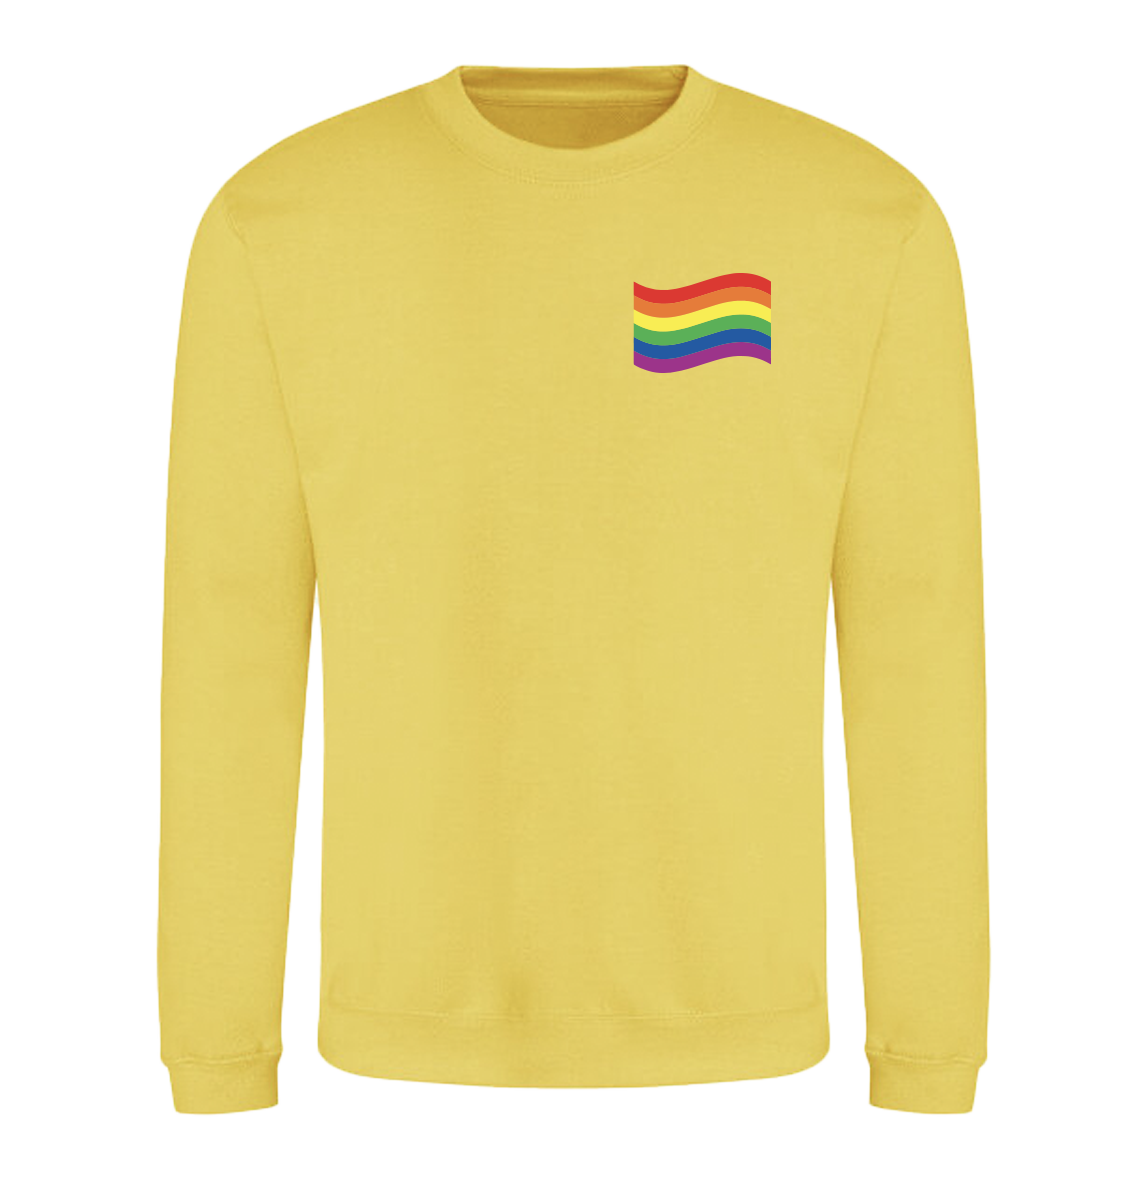 Wavy Rainbow Sweatshirt